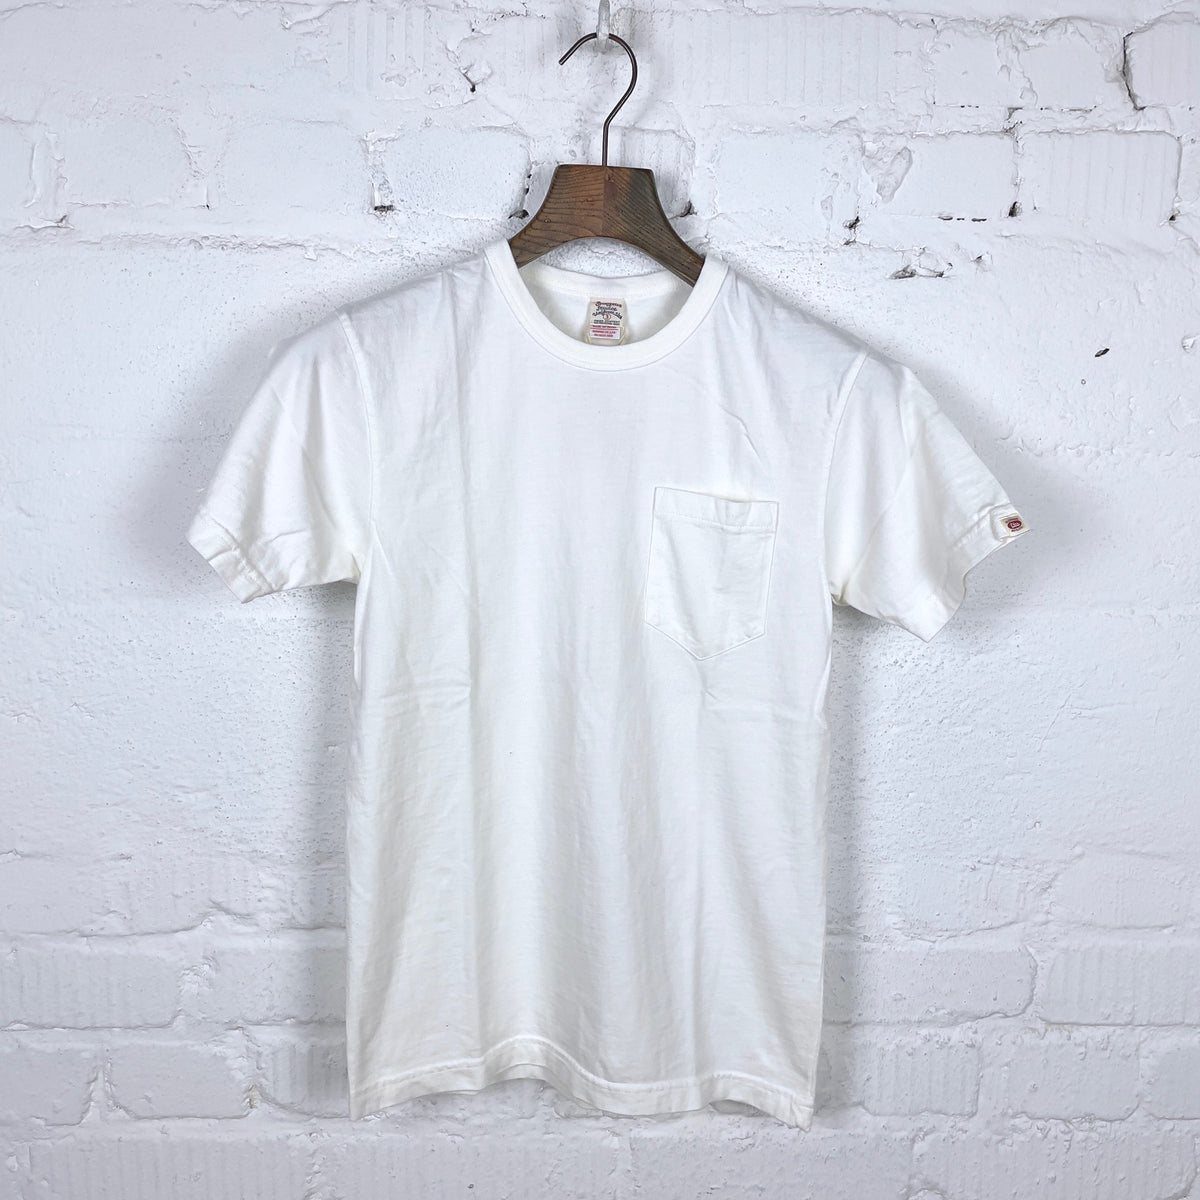 Ramayana Pocket T Shirt White - UES